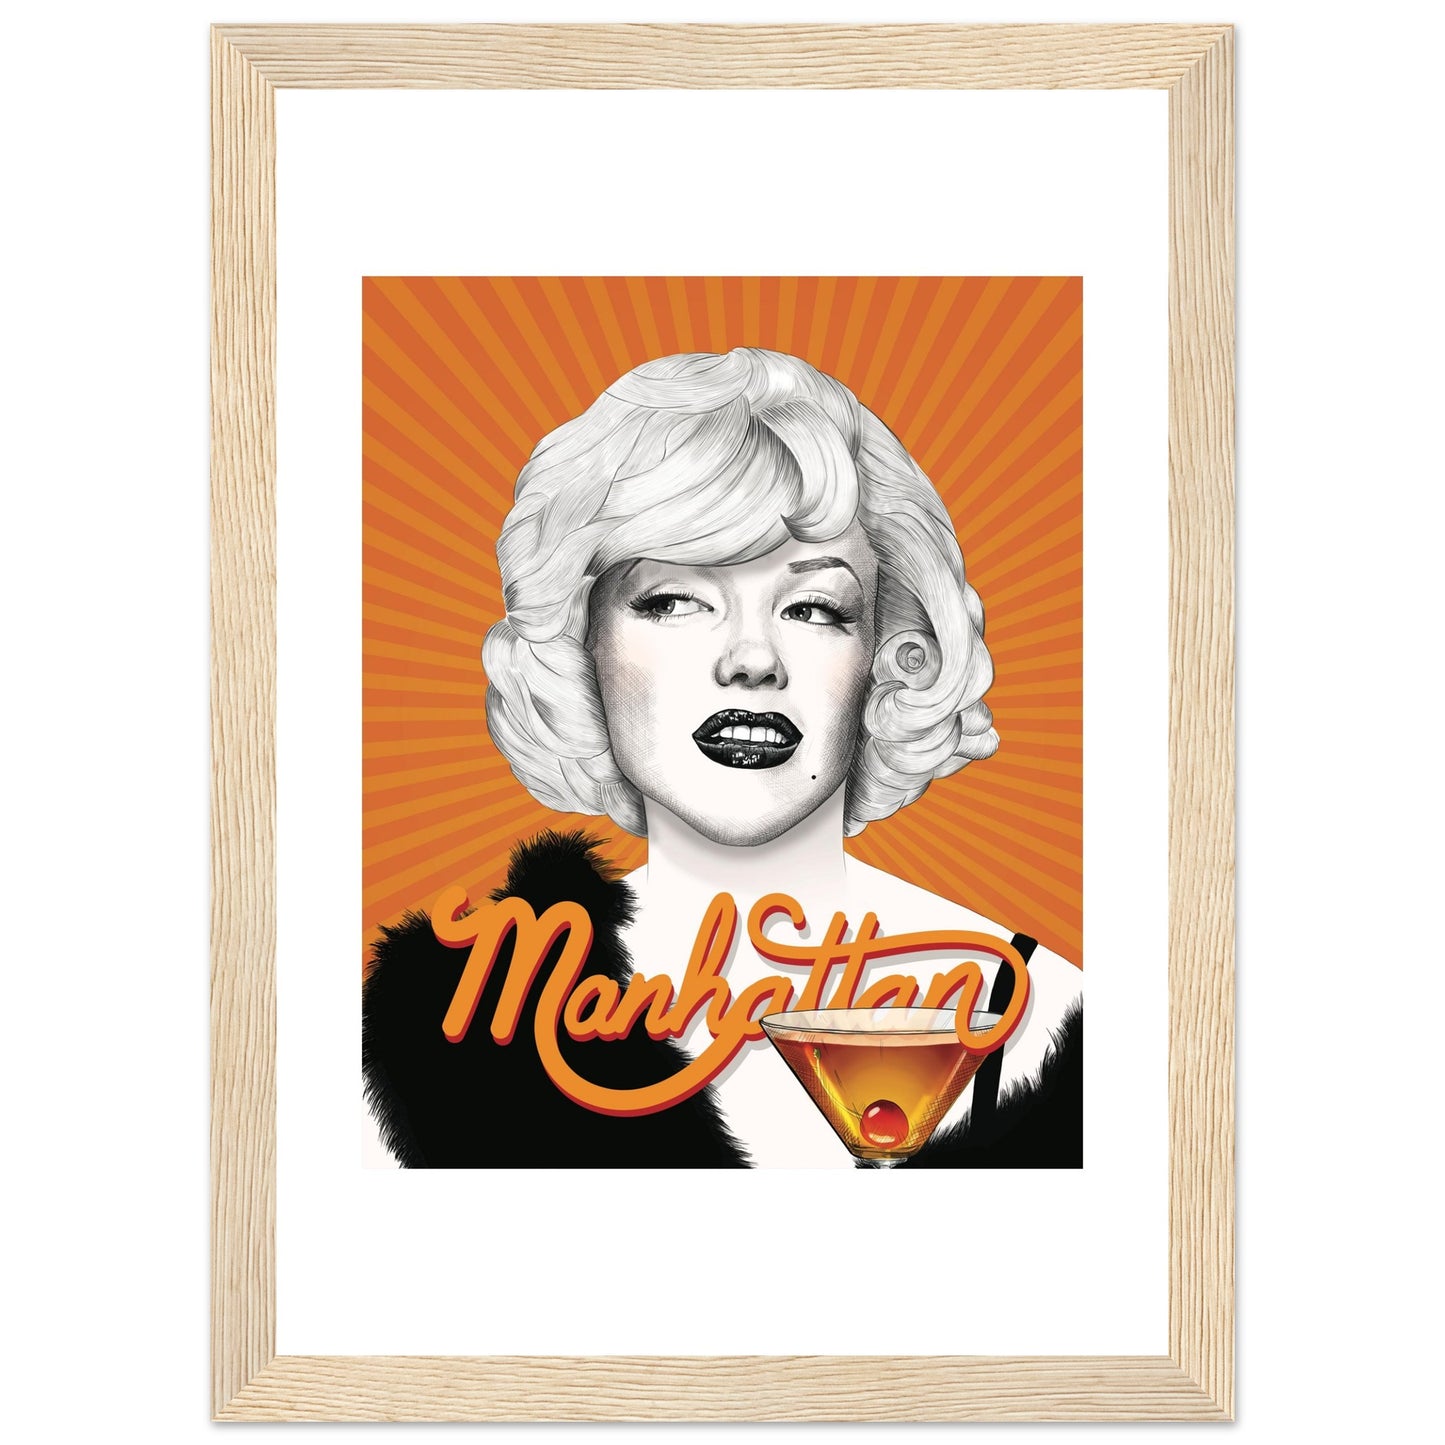 Manhattan | Marilyn Monroe | Some Like It Hot - Framed Poster